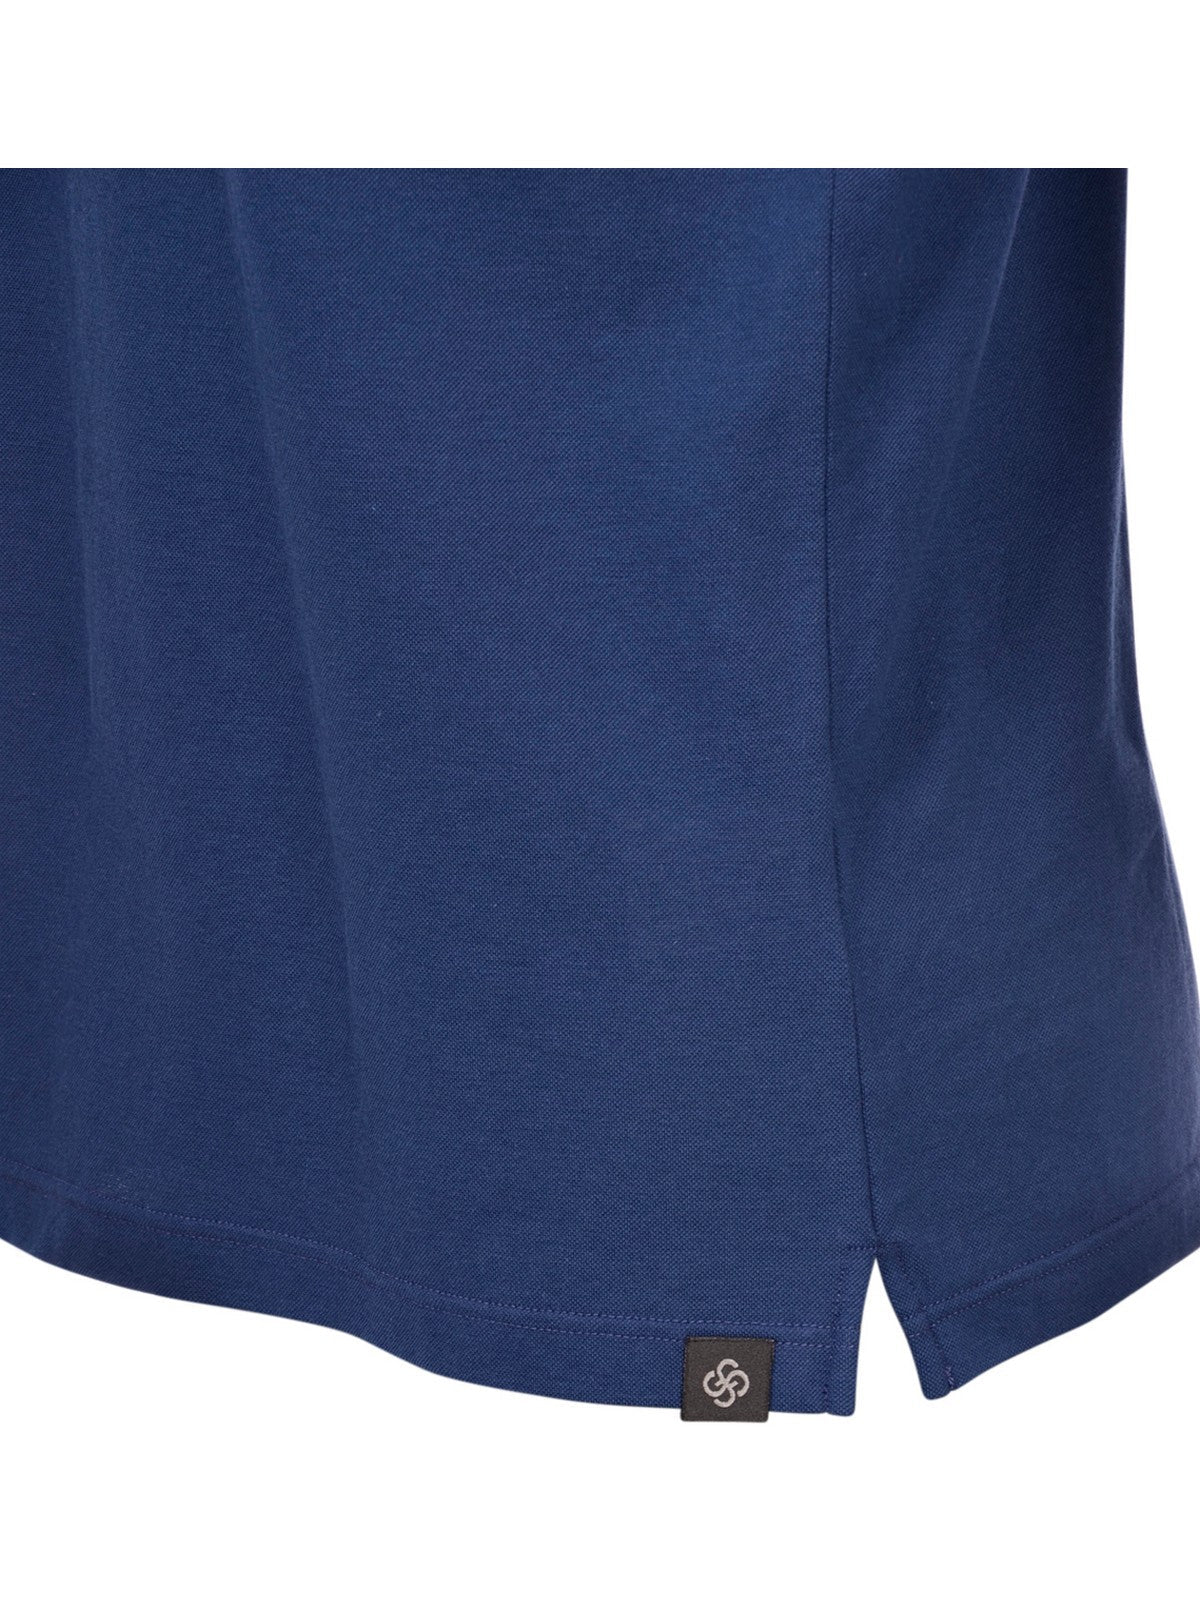 GRAN SASSO T-Shirt e Polo Uomo  60103/81401 Rosa